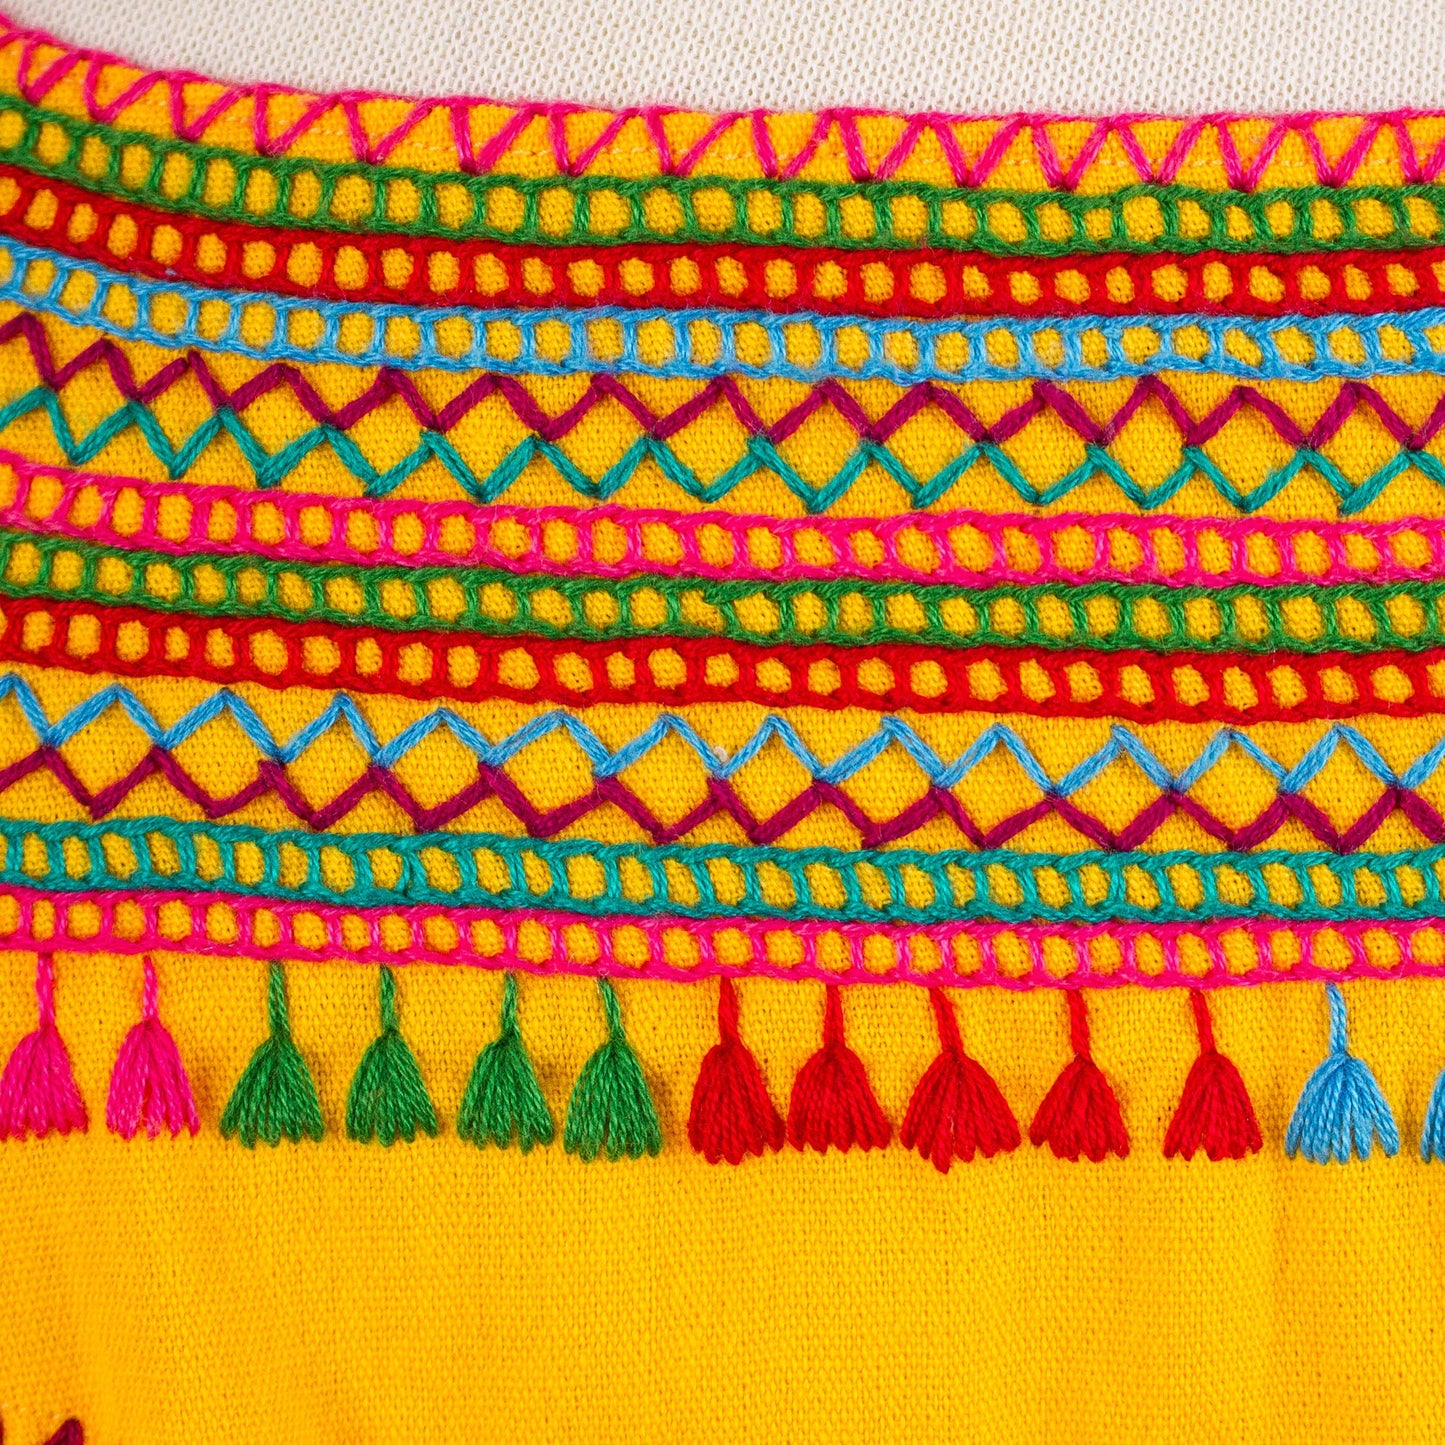 Marigold Summer Handwoven Saffron Cotton Sleeveless Blouse from Mexico